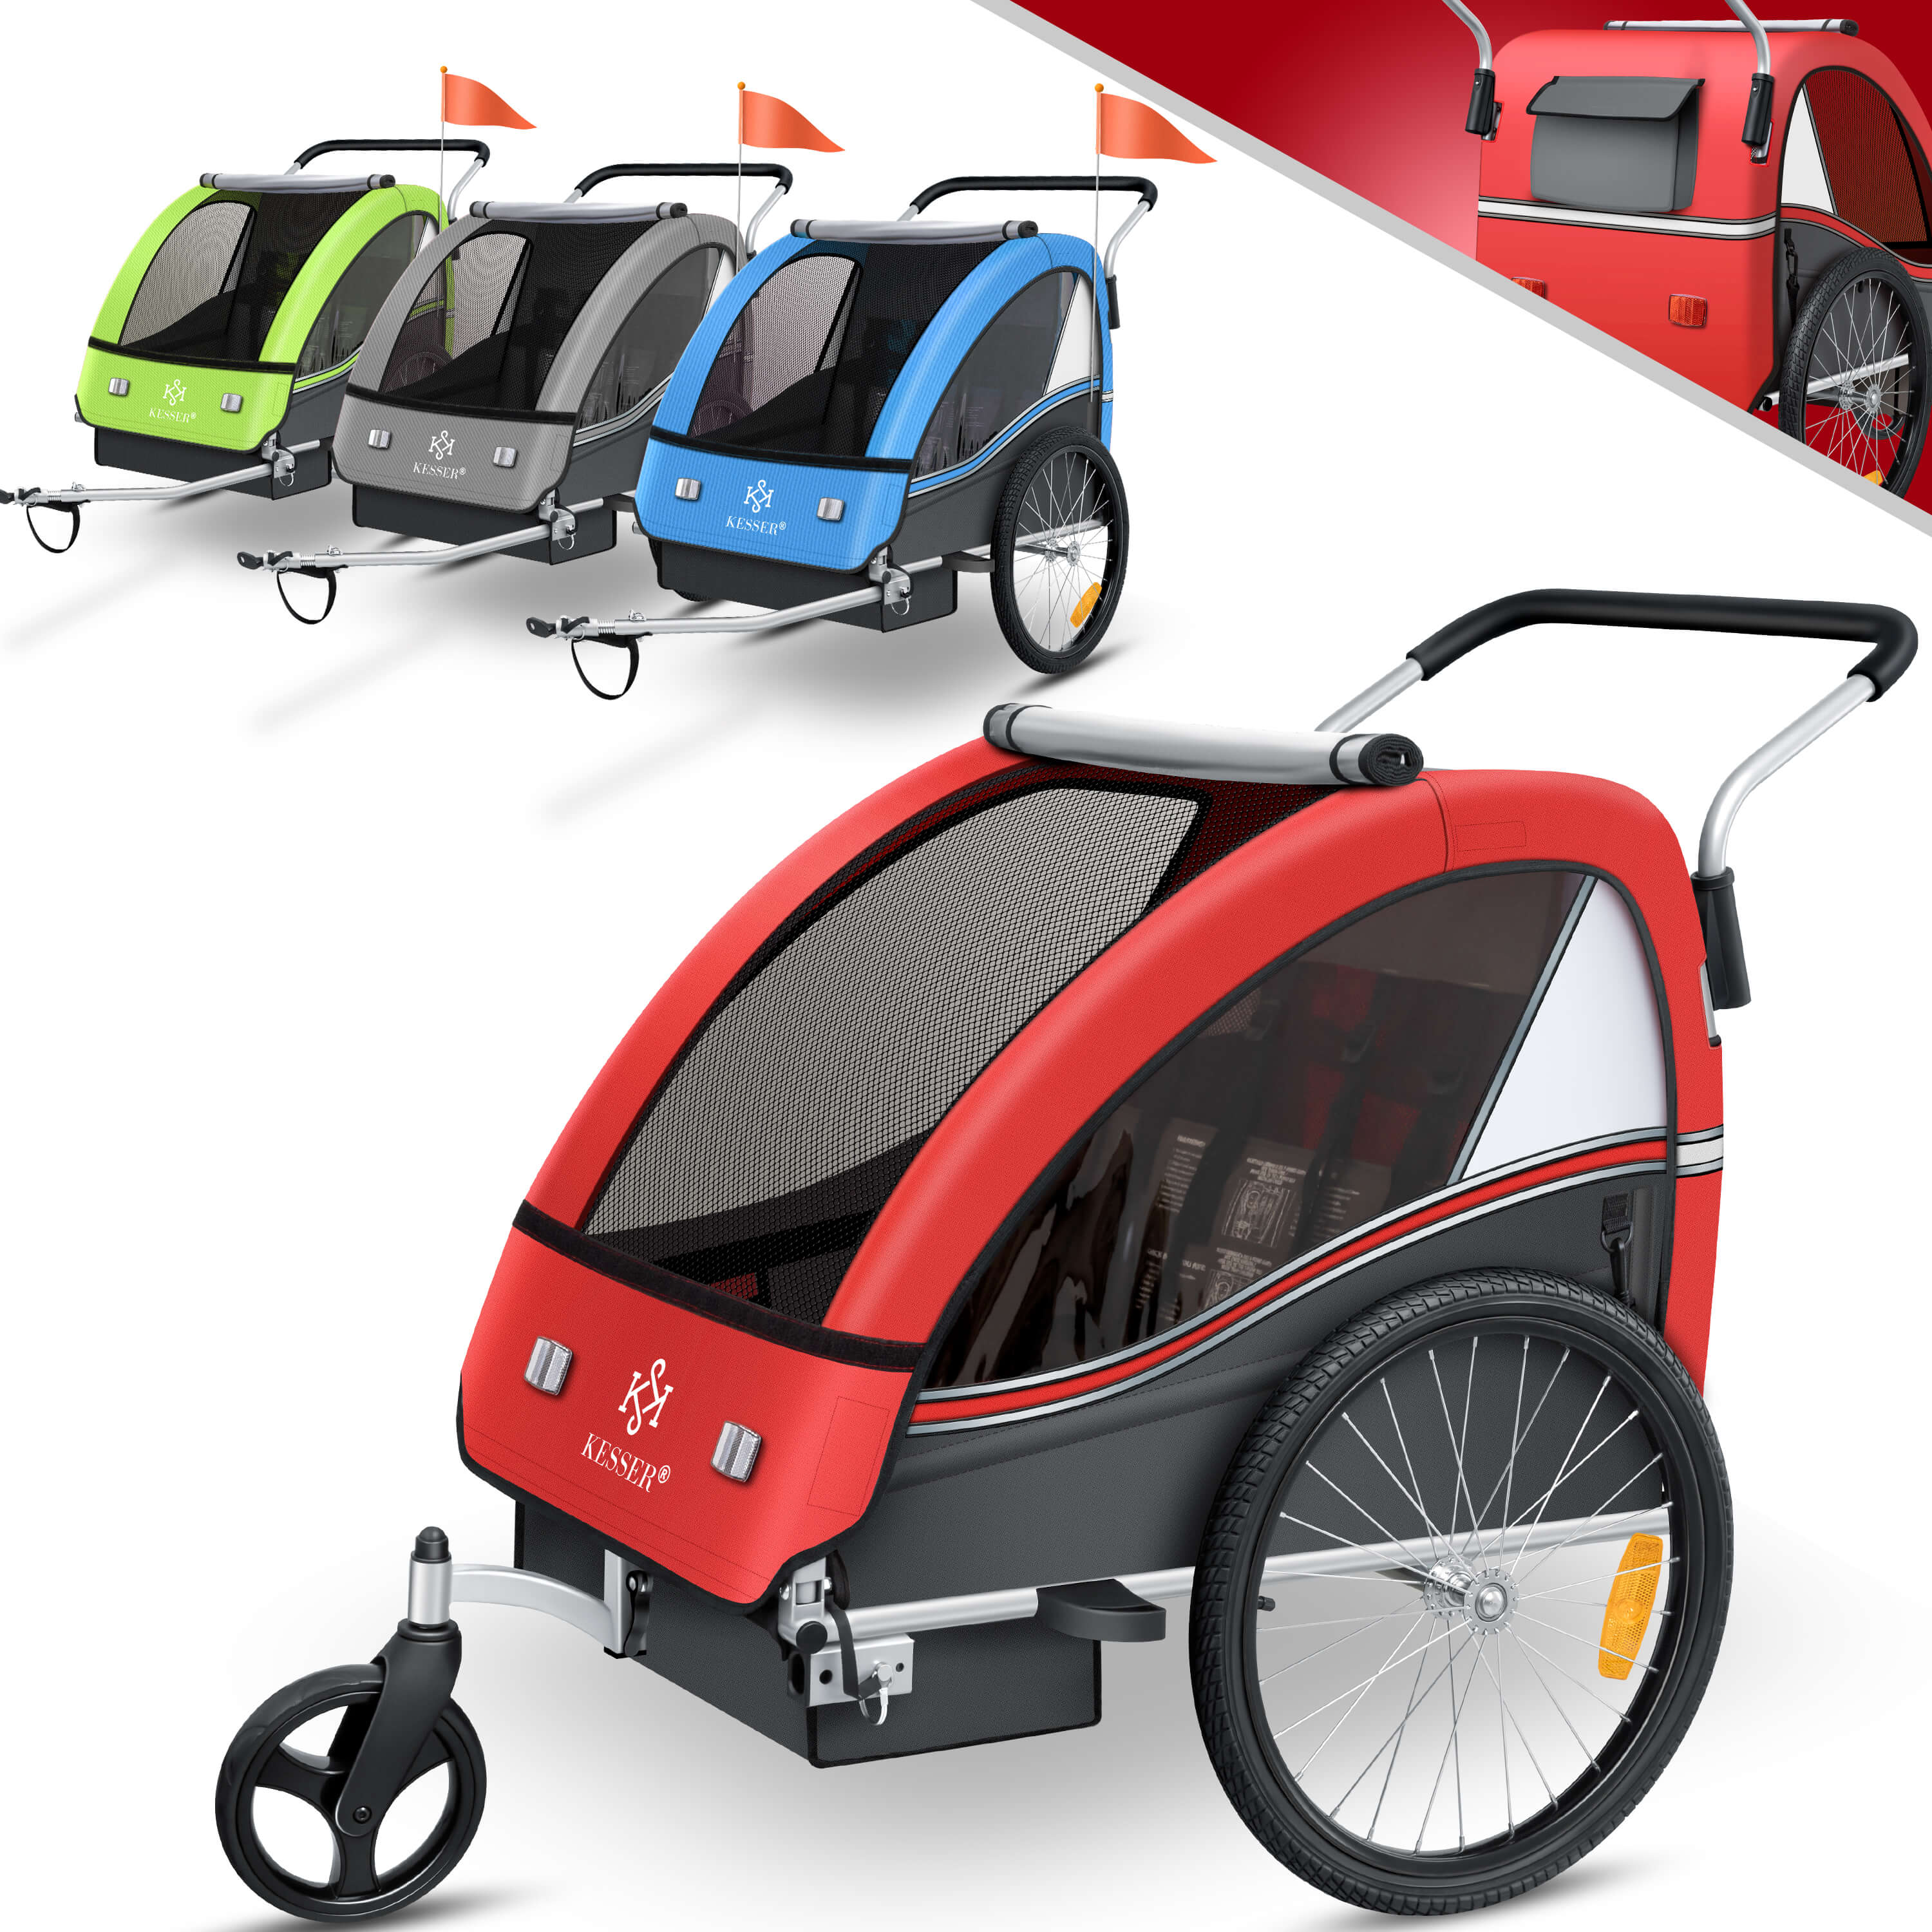 vidaXL Fahrradanhänger Jogger 2-in-1 Kinderanhänger Fahrrad Anhänger  Kinderwagen Kinderfahrradanhänger für 1 oder 2 Kinder Blau Grau